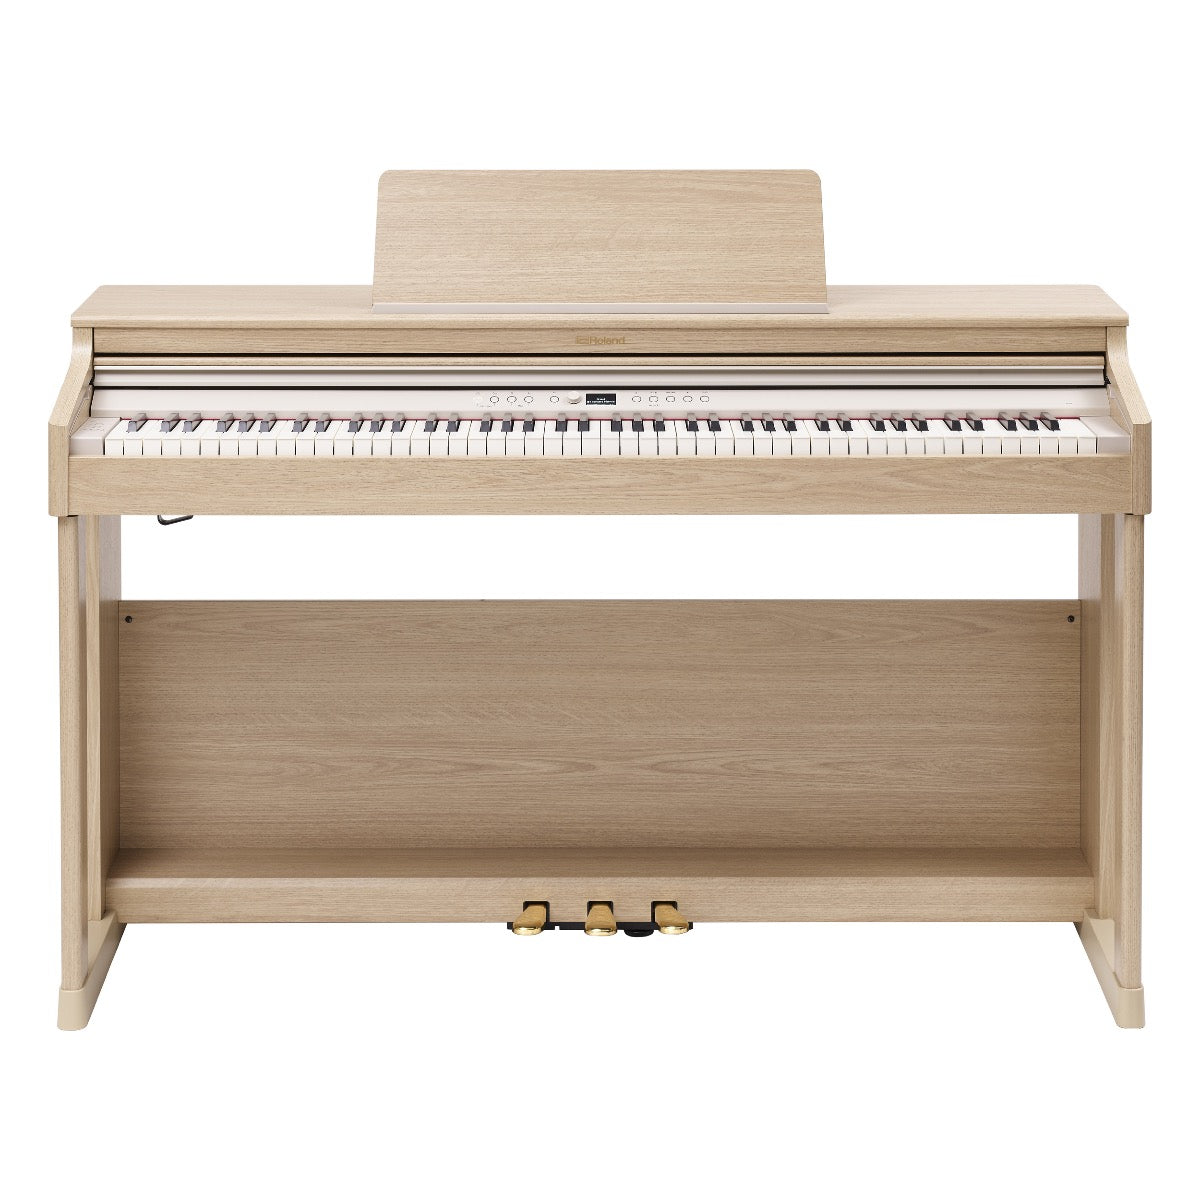 Roland RP701-LA Classic Design Piano - Light Oak